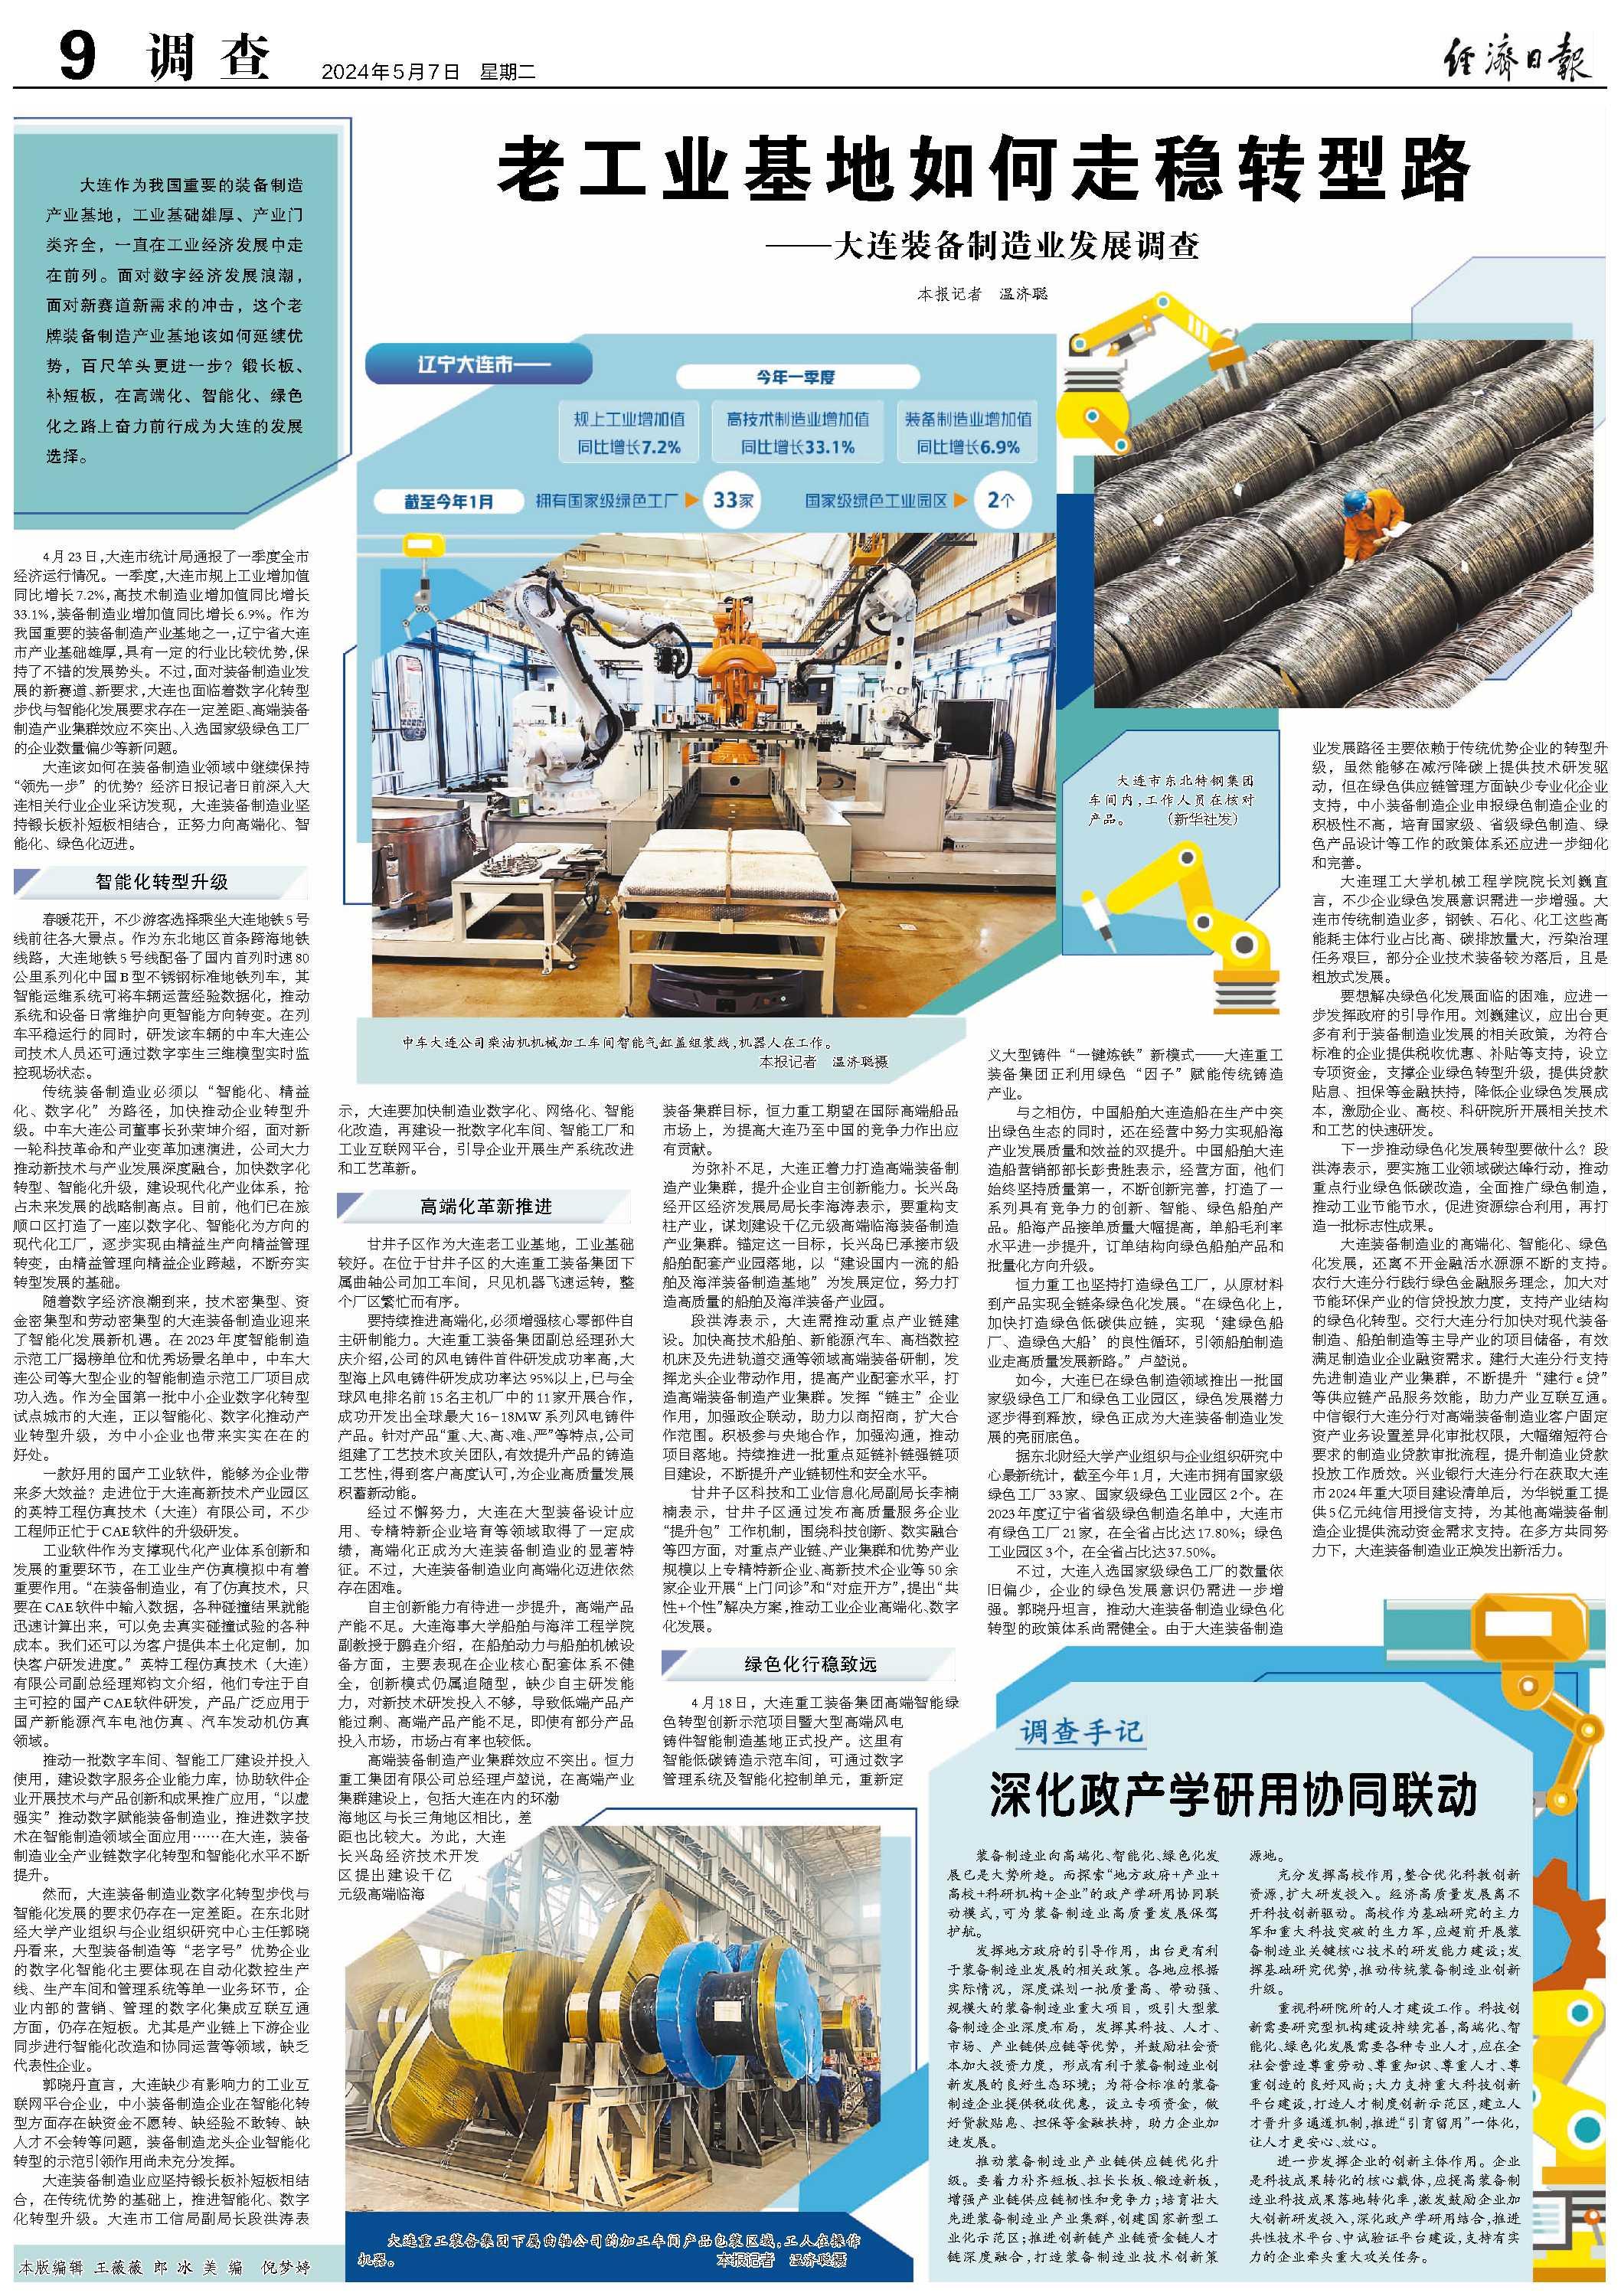 中央媒体看辽宁丨经济日报:老工业基地如何走稳转型路——大连装备